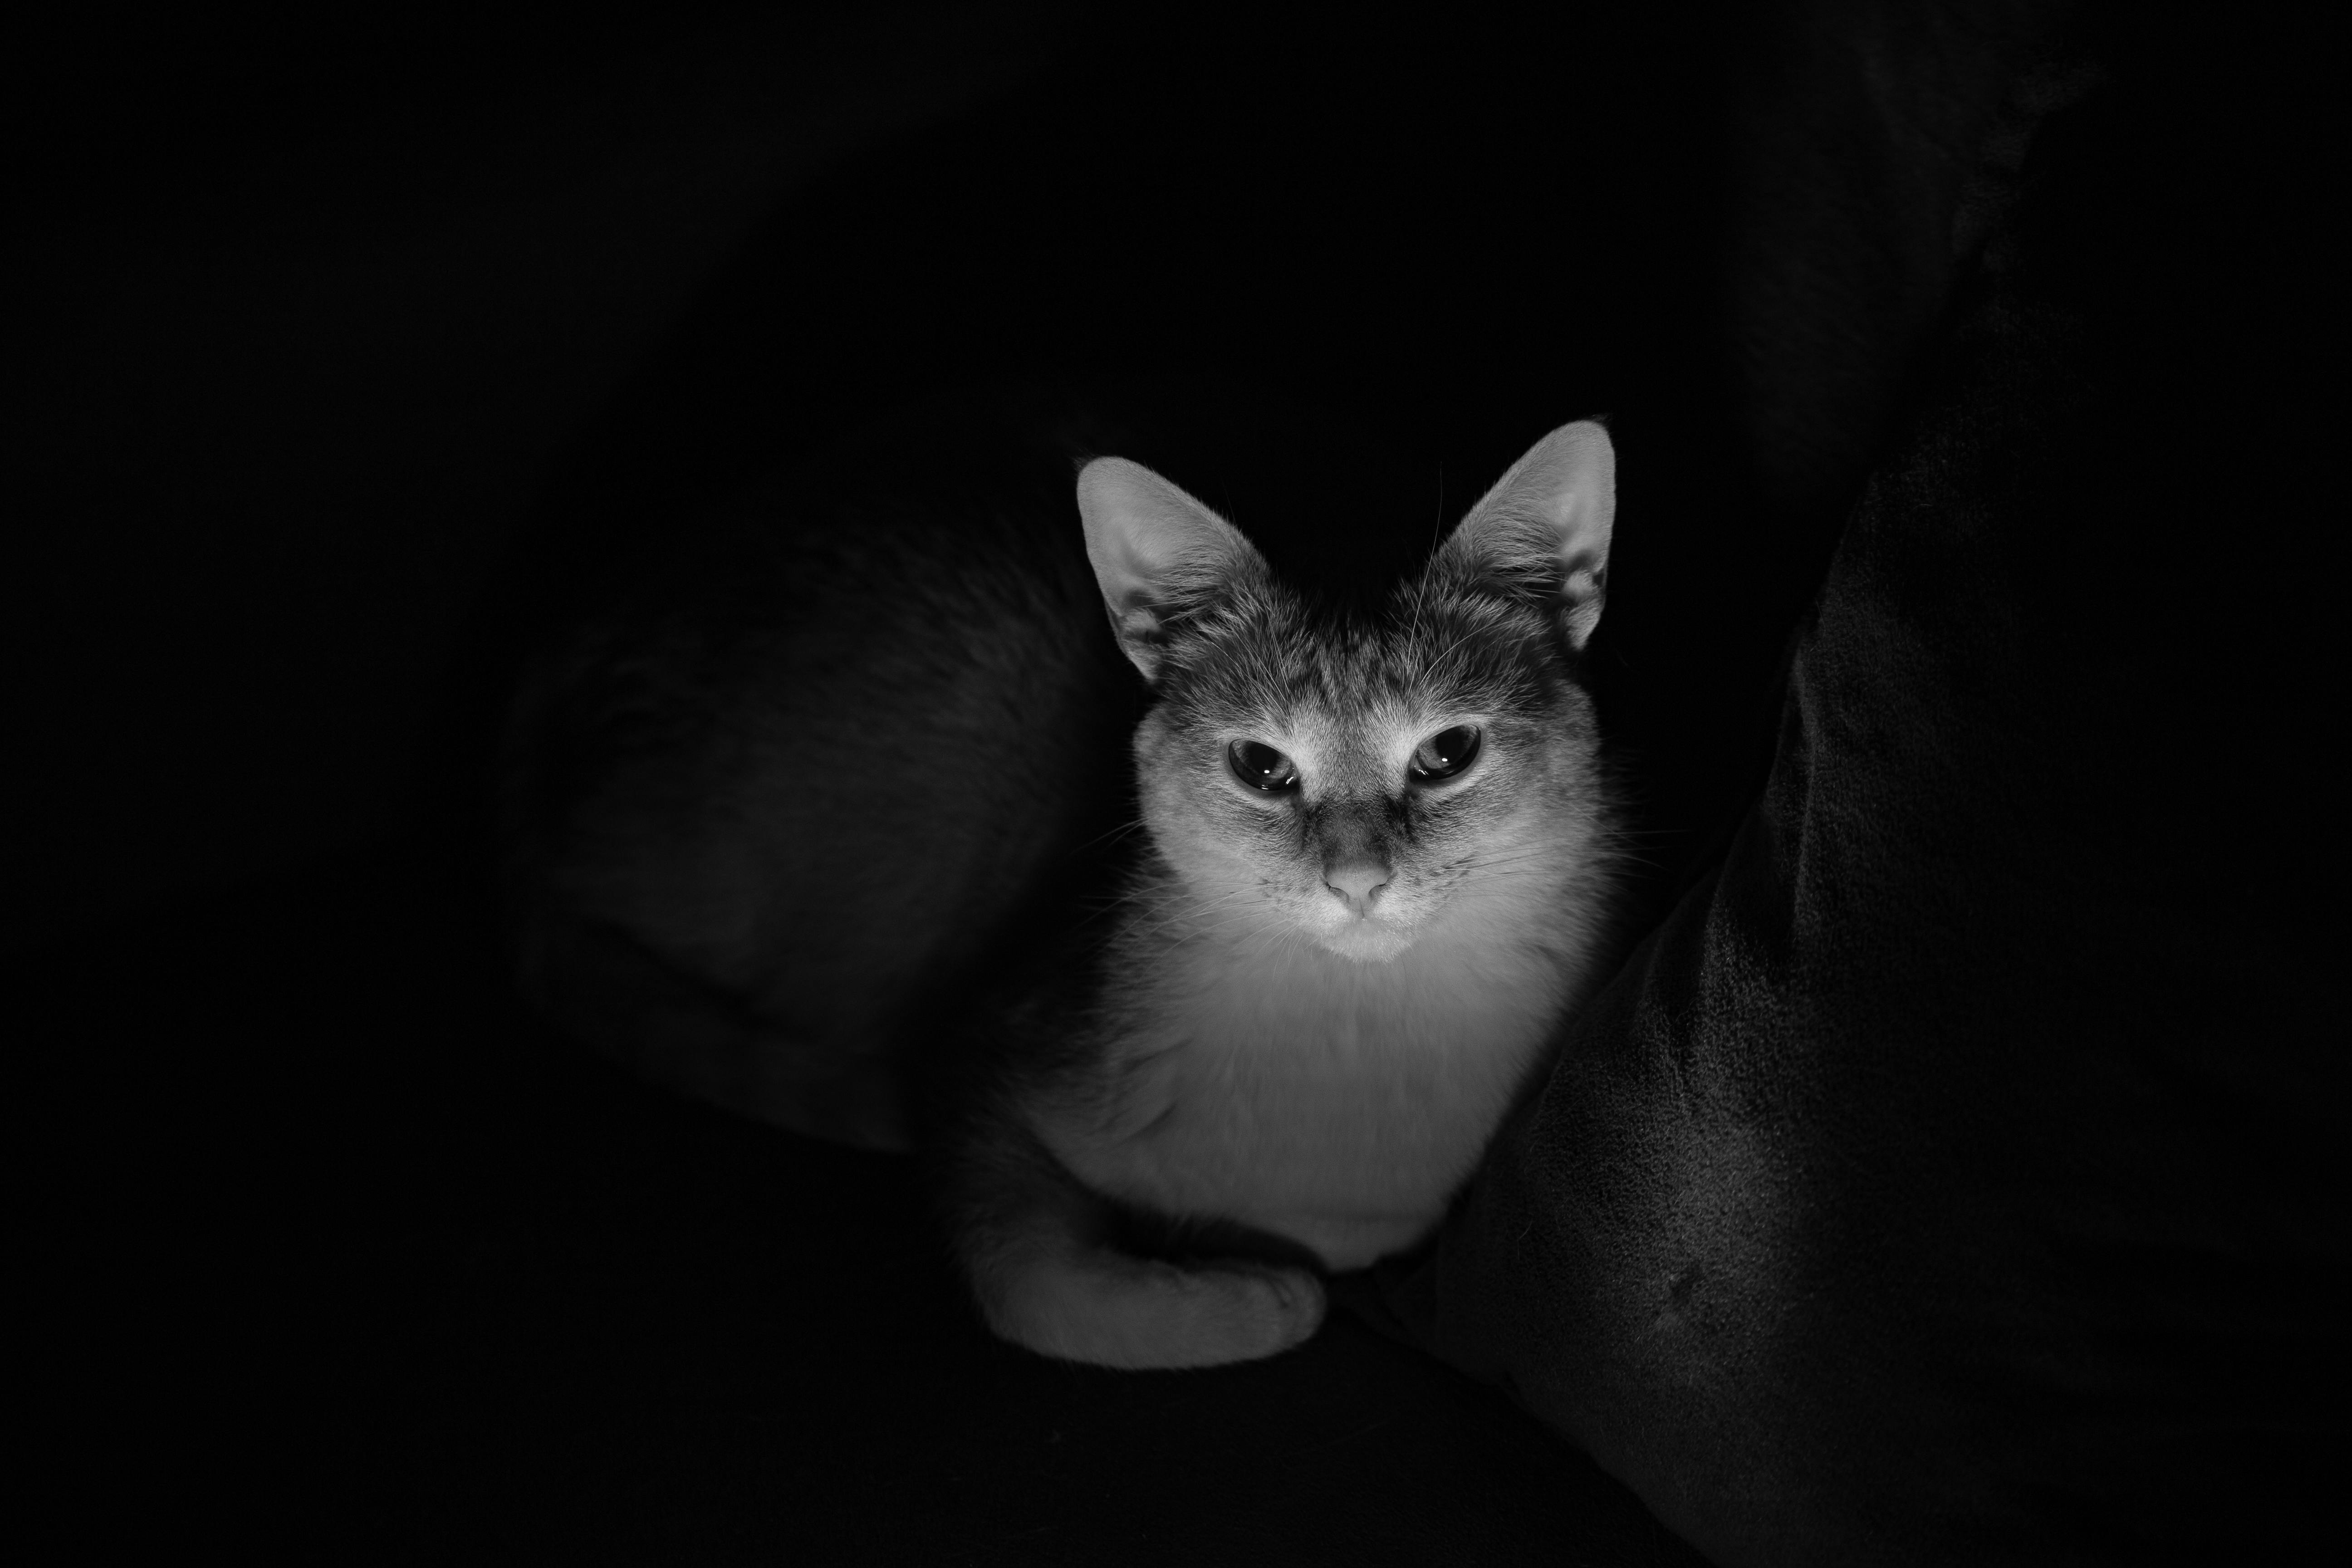 Hình ảnh Mèo Tabby đen trắng: Mèo Tabby đen trắng là một trong những loại mèo được ưa chuộng vì nét tươi trẻ, phong cách của chúng. Hình ảnh Mèo Tabby đen trắng nằm nghỉ, ngủ say trên chiếc ghế với nét uyển chuyển, đầy thư giãn sẽ là lựa chọn hoàn hảo cho người yêu thích loài mèo.